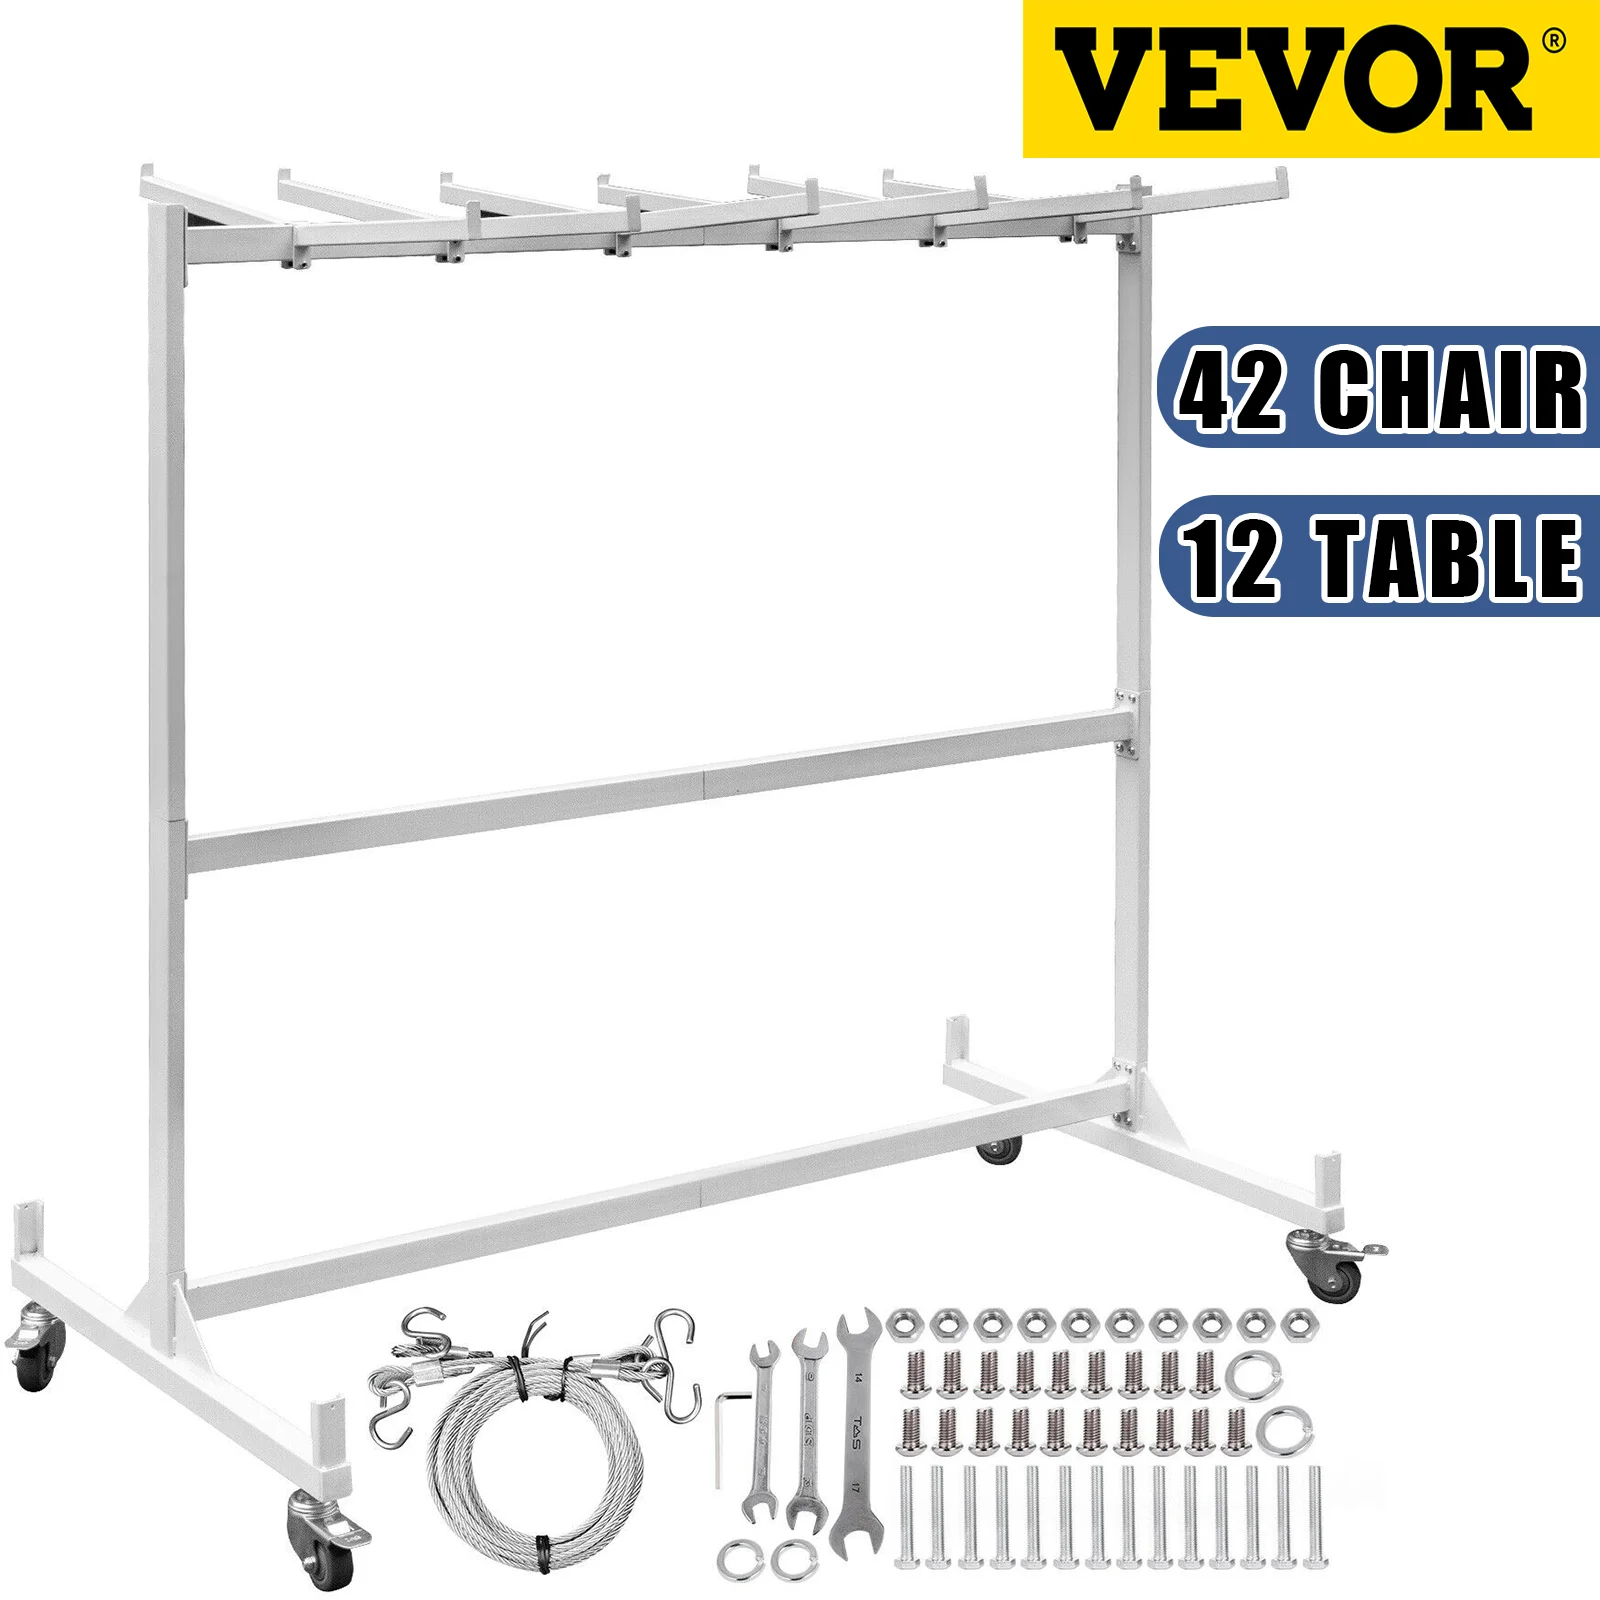 VEVOR-silla plegable de 1 capa, carrito con ruedas de bloqueo, máximo 42 sillas, marco de acero de rueda giratoria con cuerda, 3 filas